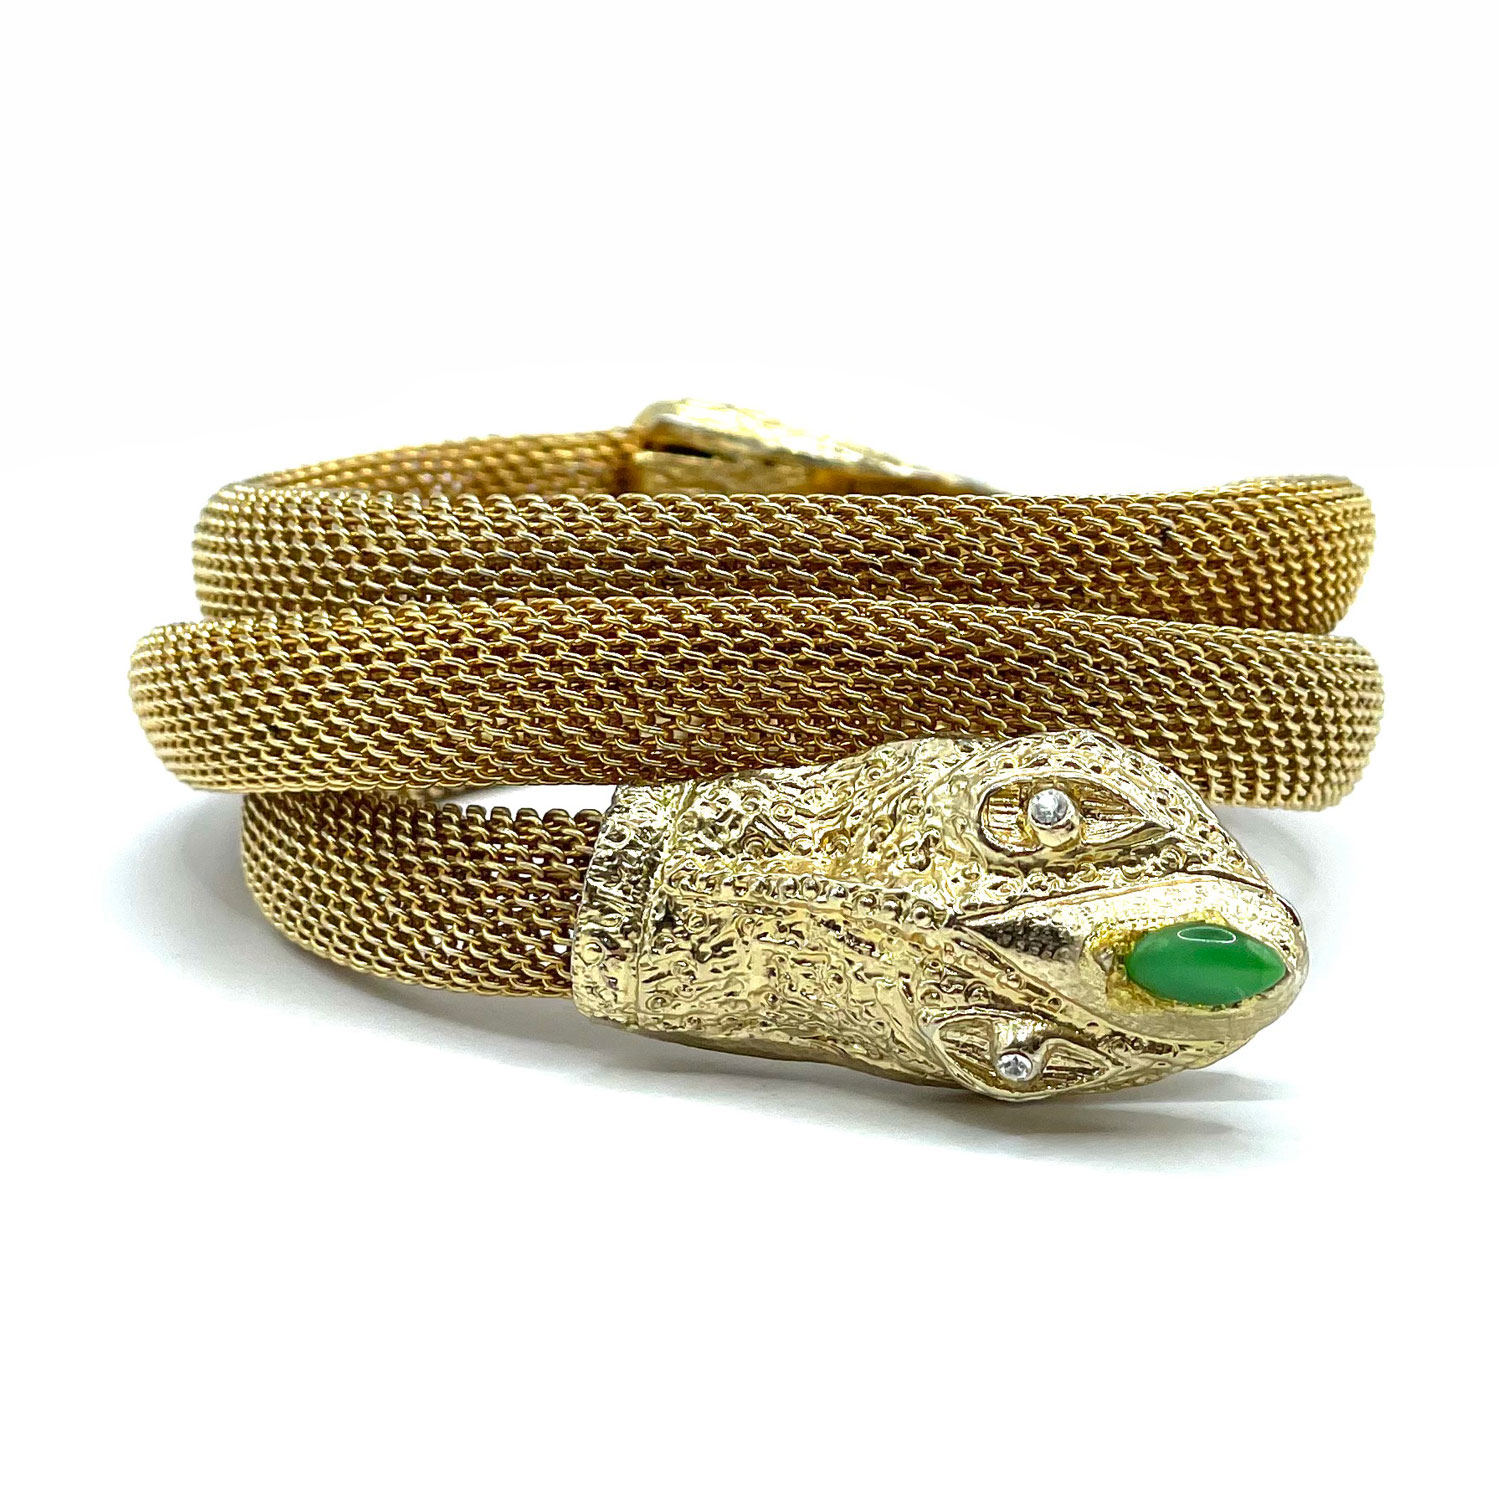 Hobe mesh snake bracelet